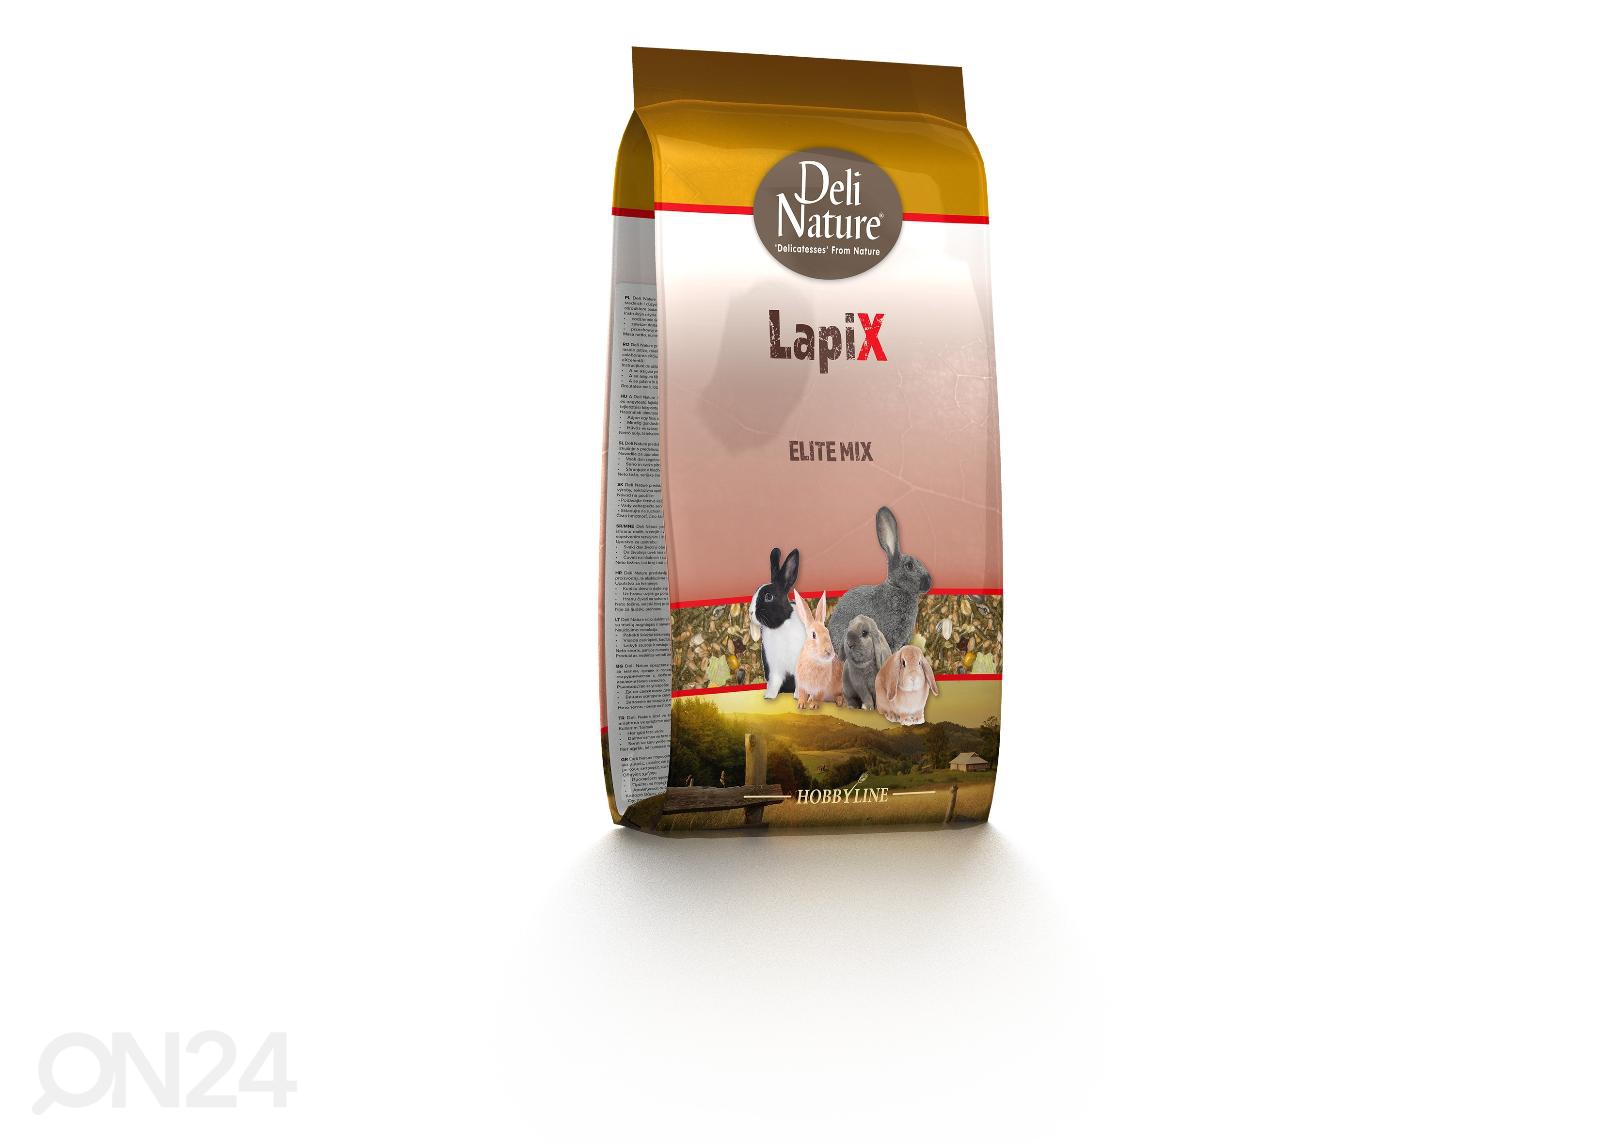 Kanin ruoka Lapix Elite Mix 4 kg HS-305857  Urheilu